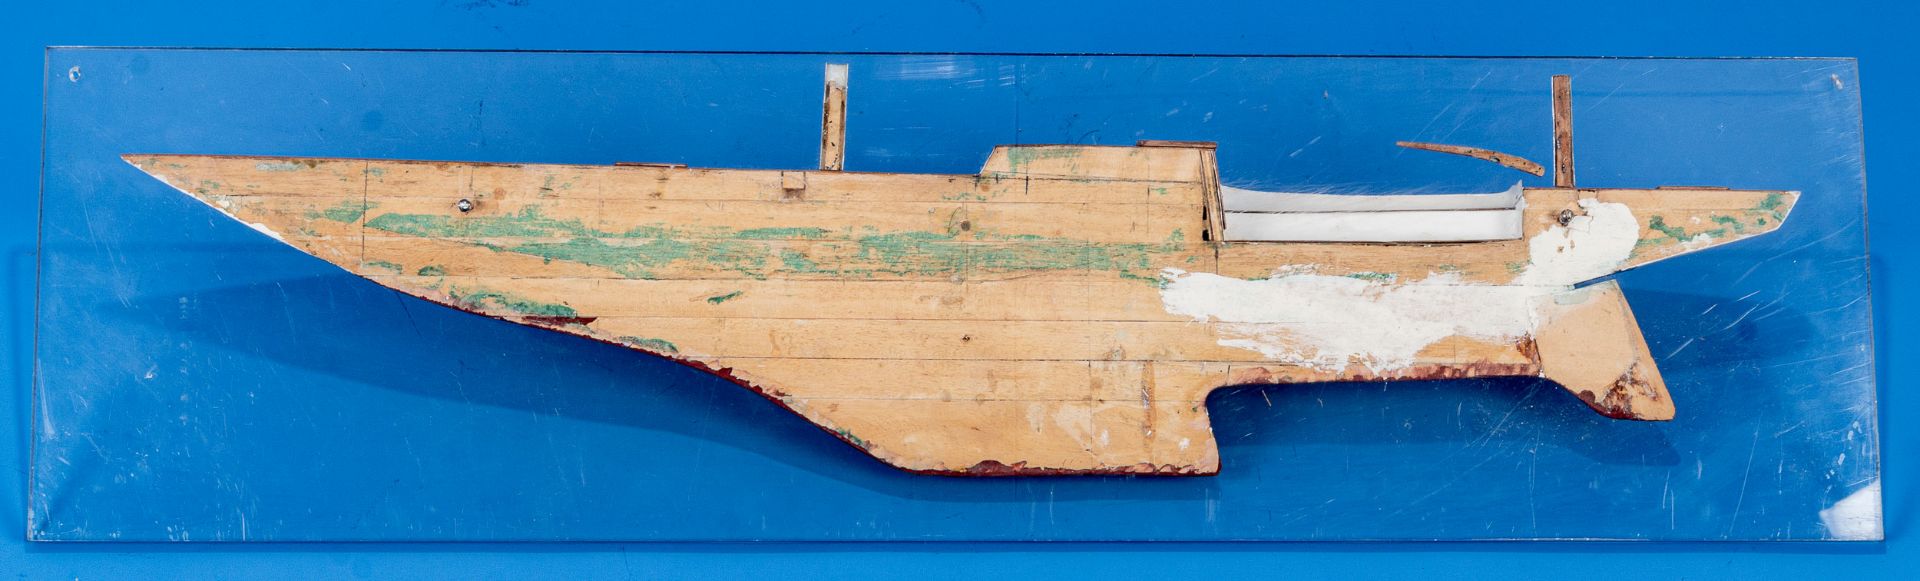 Halbmodell eines Segelschiffrumpfes, auf Fiberglas montiertes, lackiertes und furniertes Holzmodell - Image 4 of 4